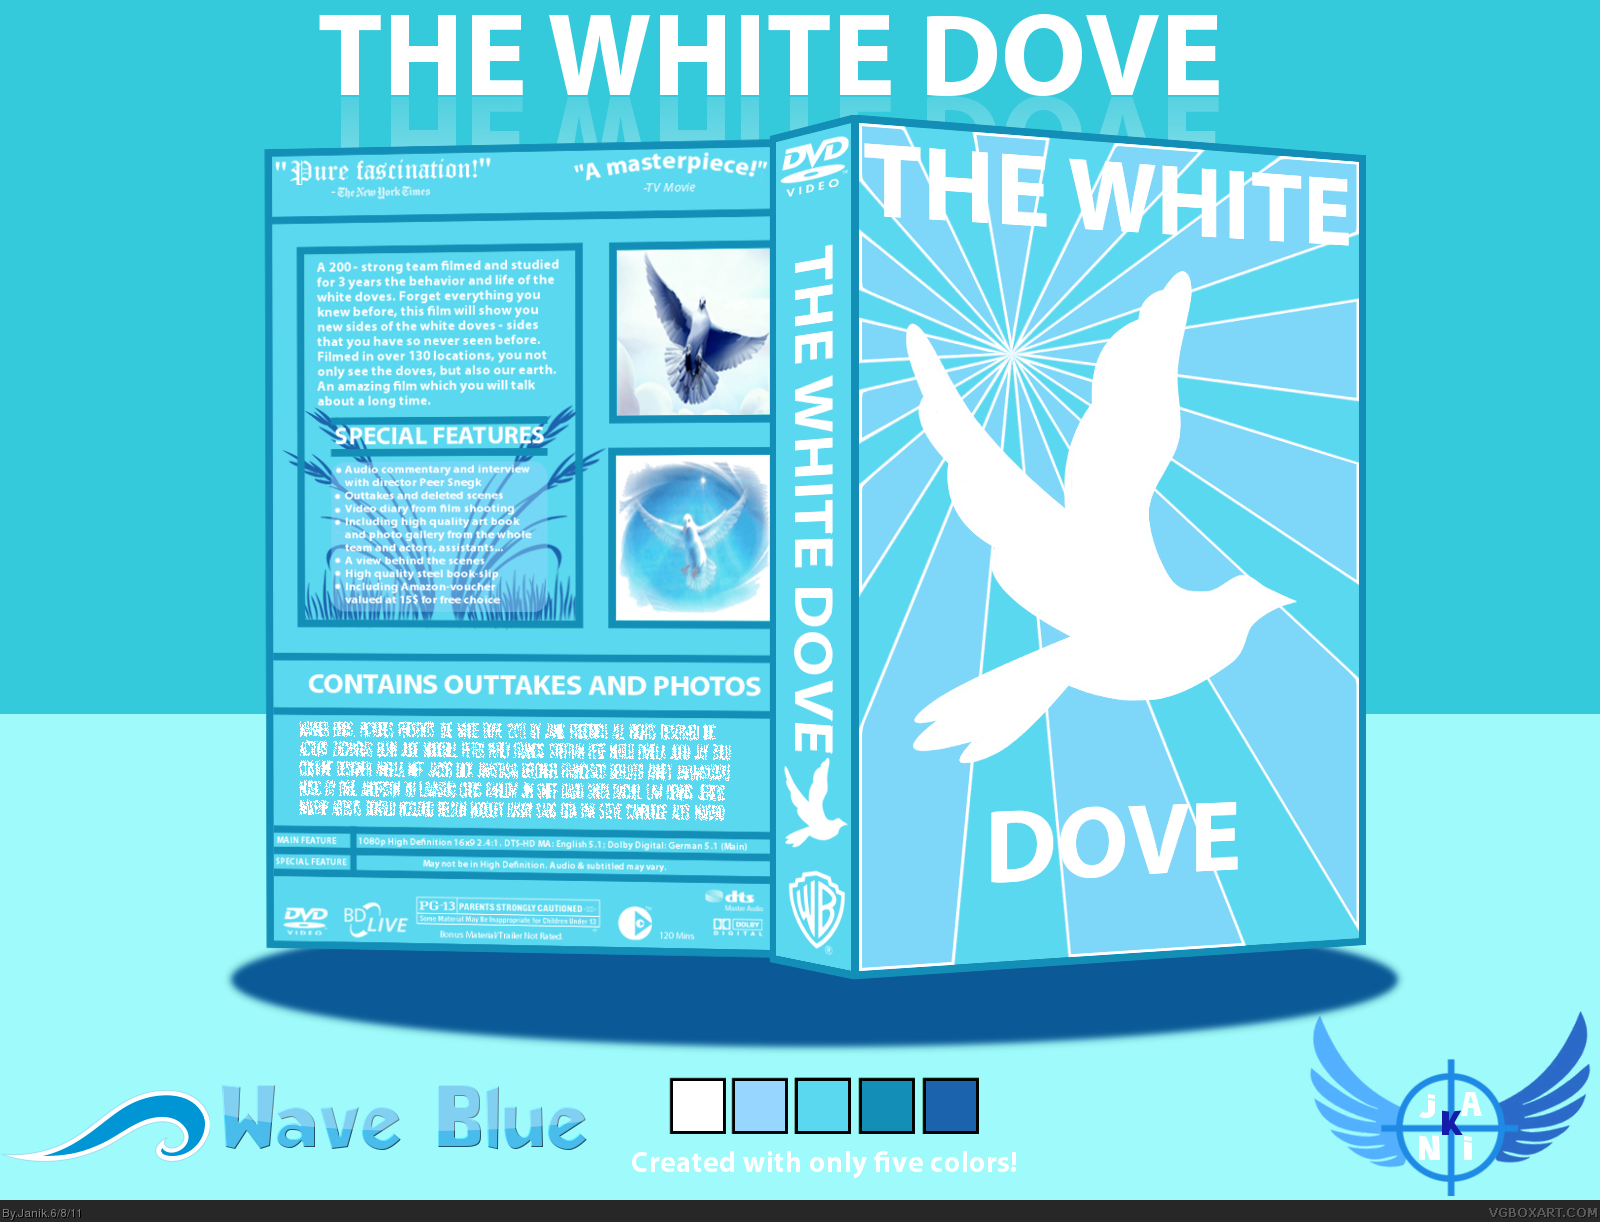 THE WHITE DOVE box cover